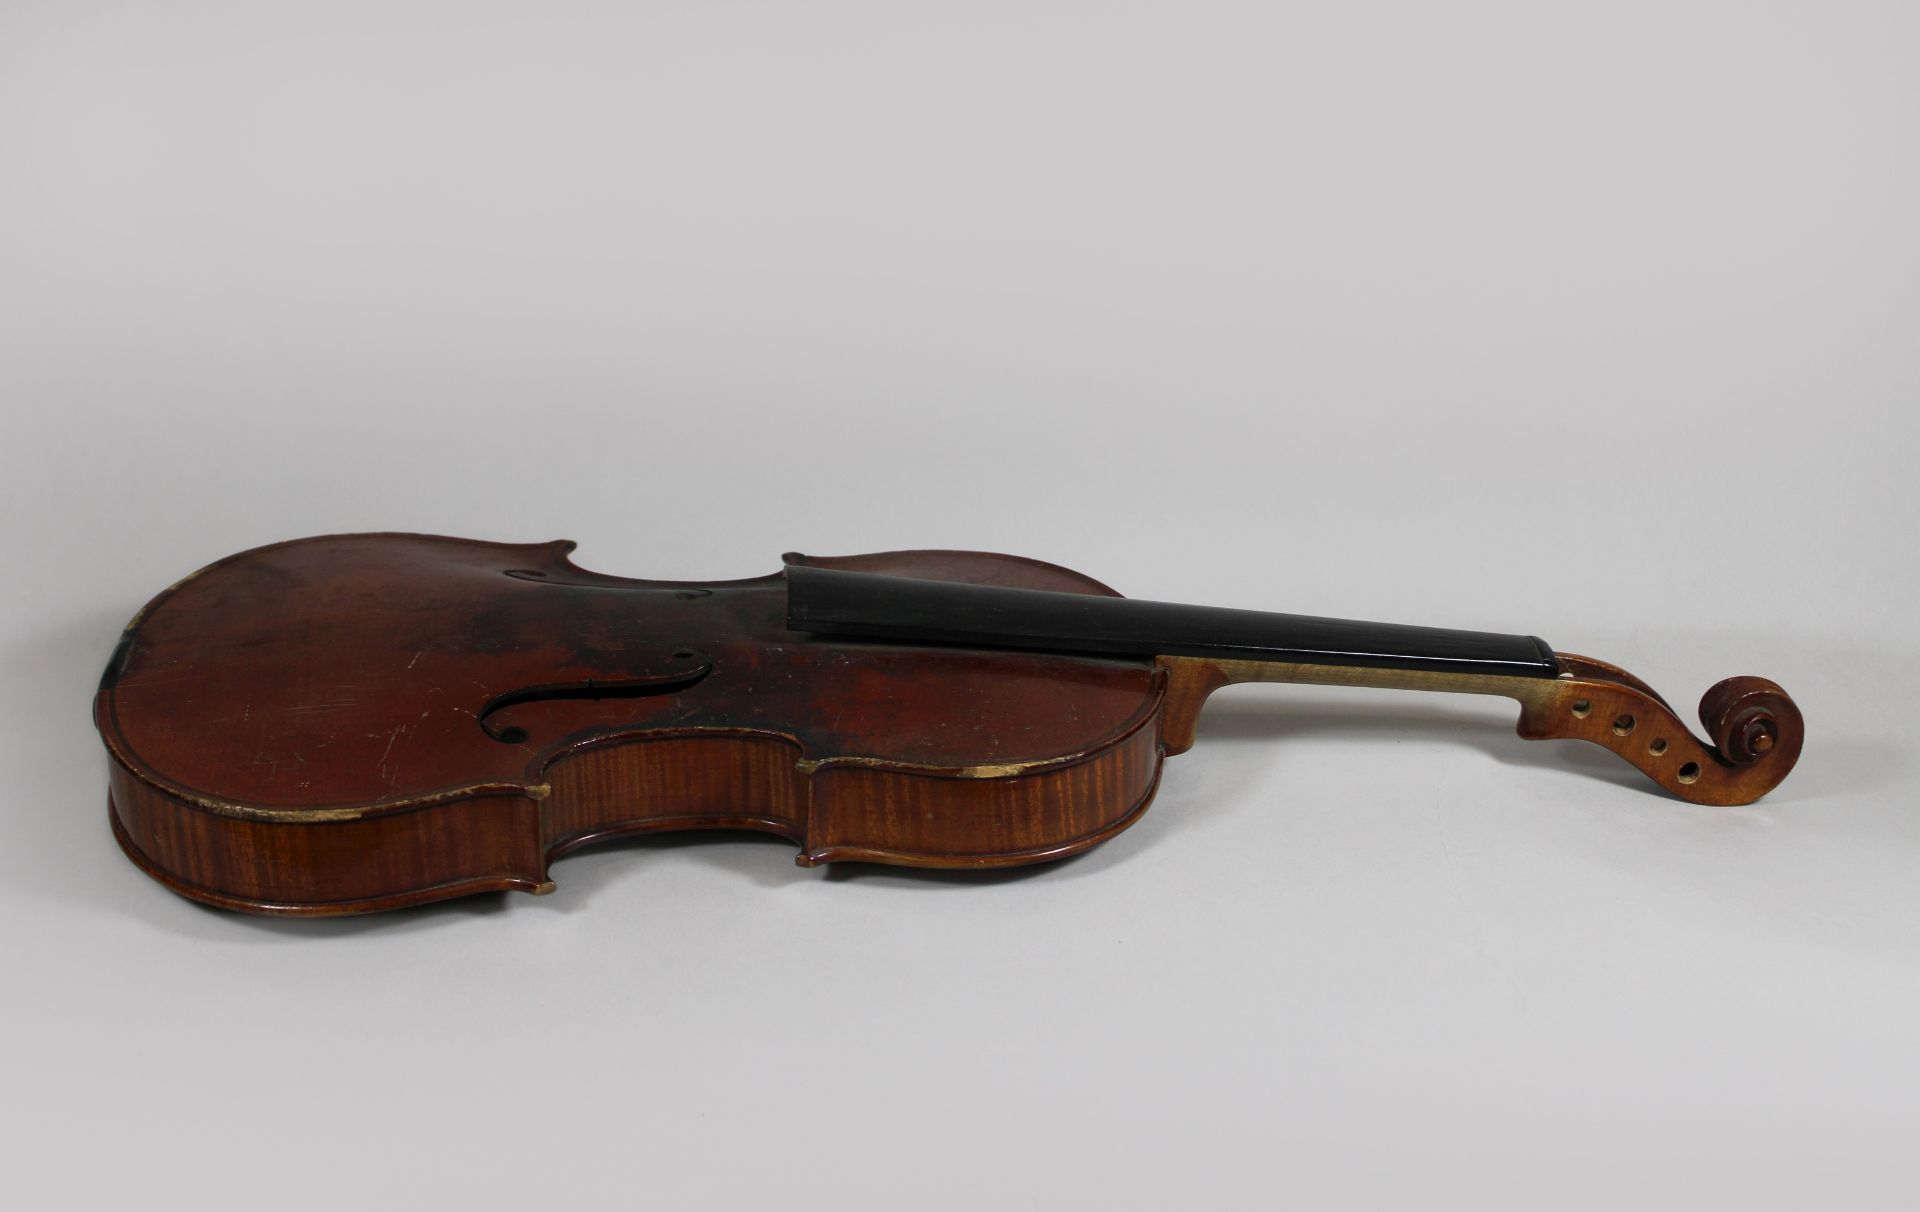 Violine, 19. Jh., Deutschland, L.: 58 cm. Altersgemäßer Zustand, Gebrauchs- und Reibespuren. - Bild 3 aus 3